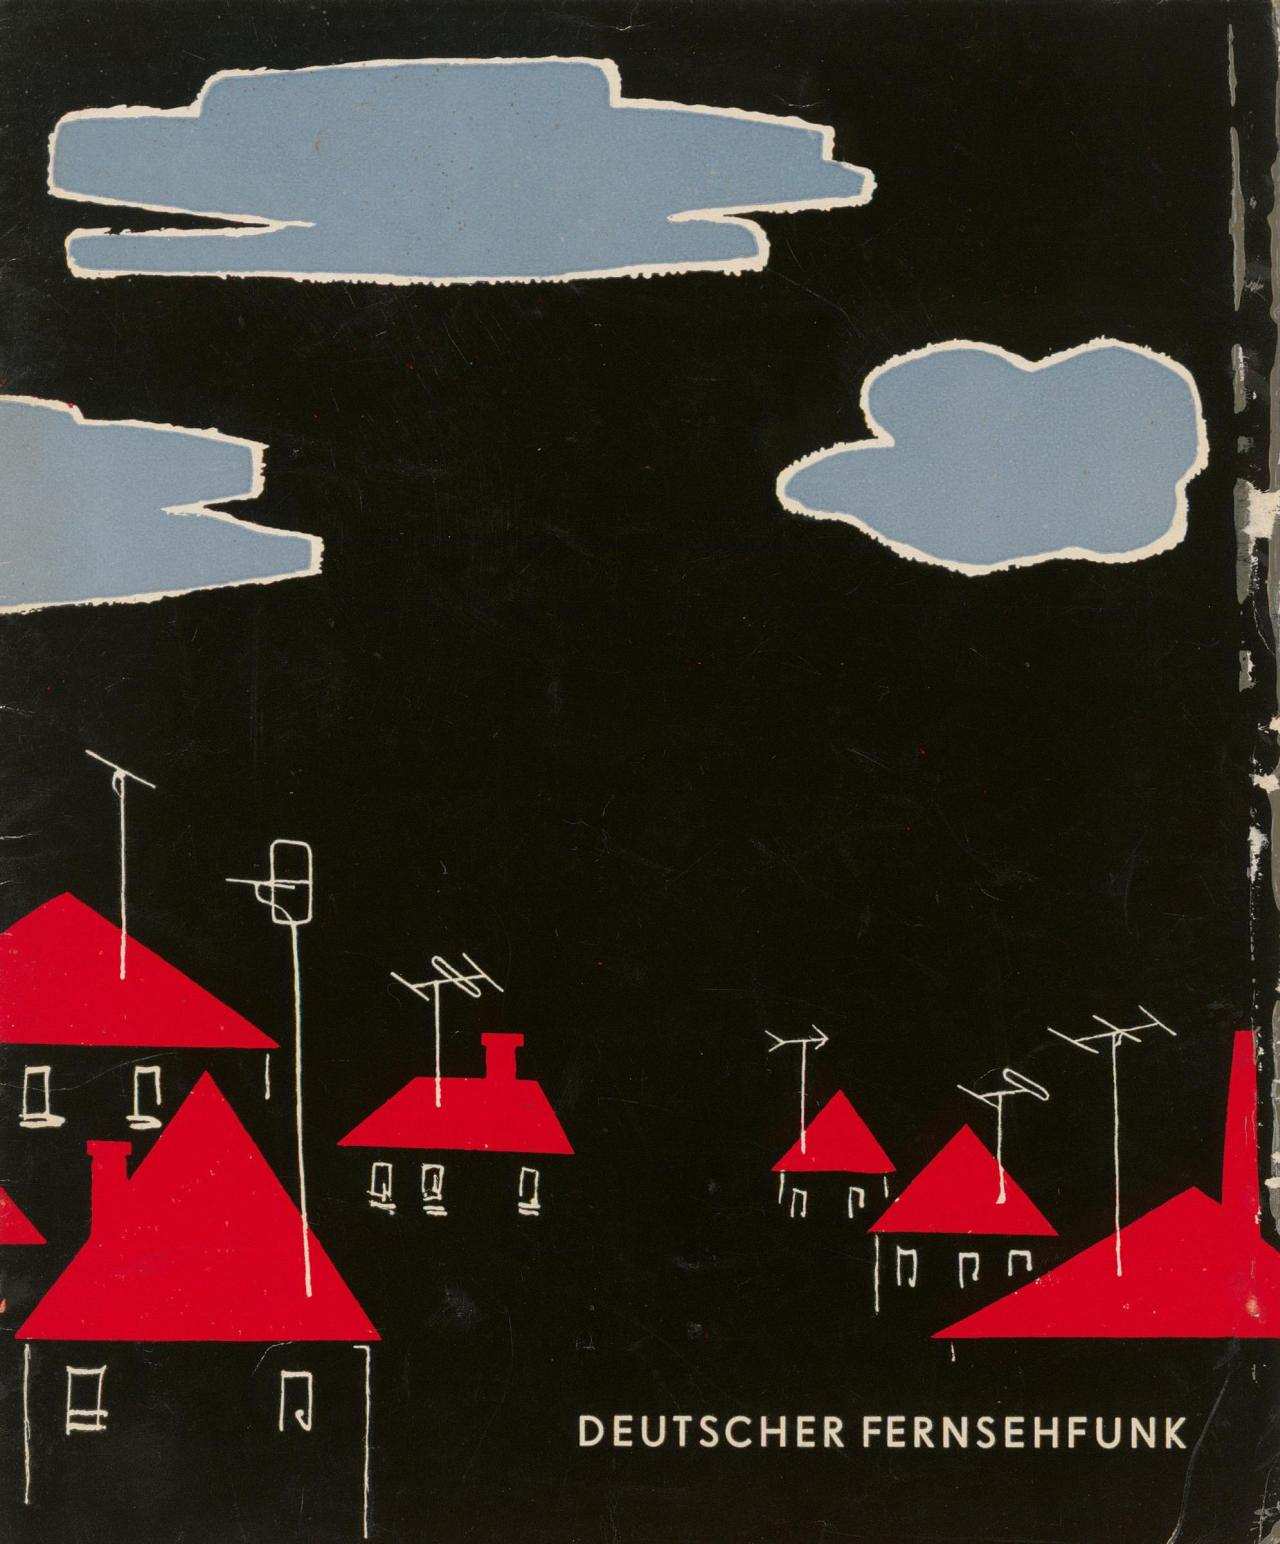 Die Broschüre zeigt einige Häuser mit Antennen auf den Dächern als einfach gehaltene Strichzeichnungen. Unten rechts der Text 